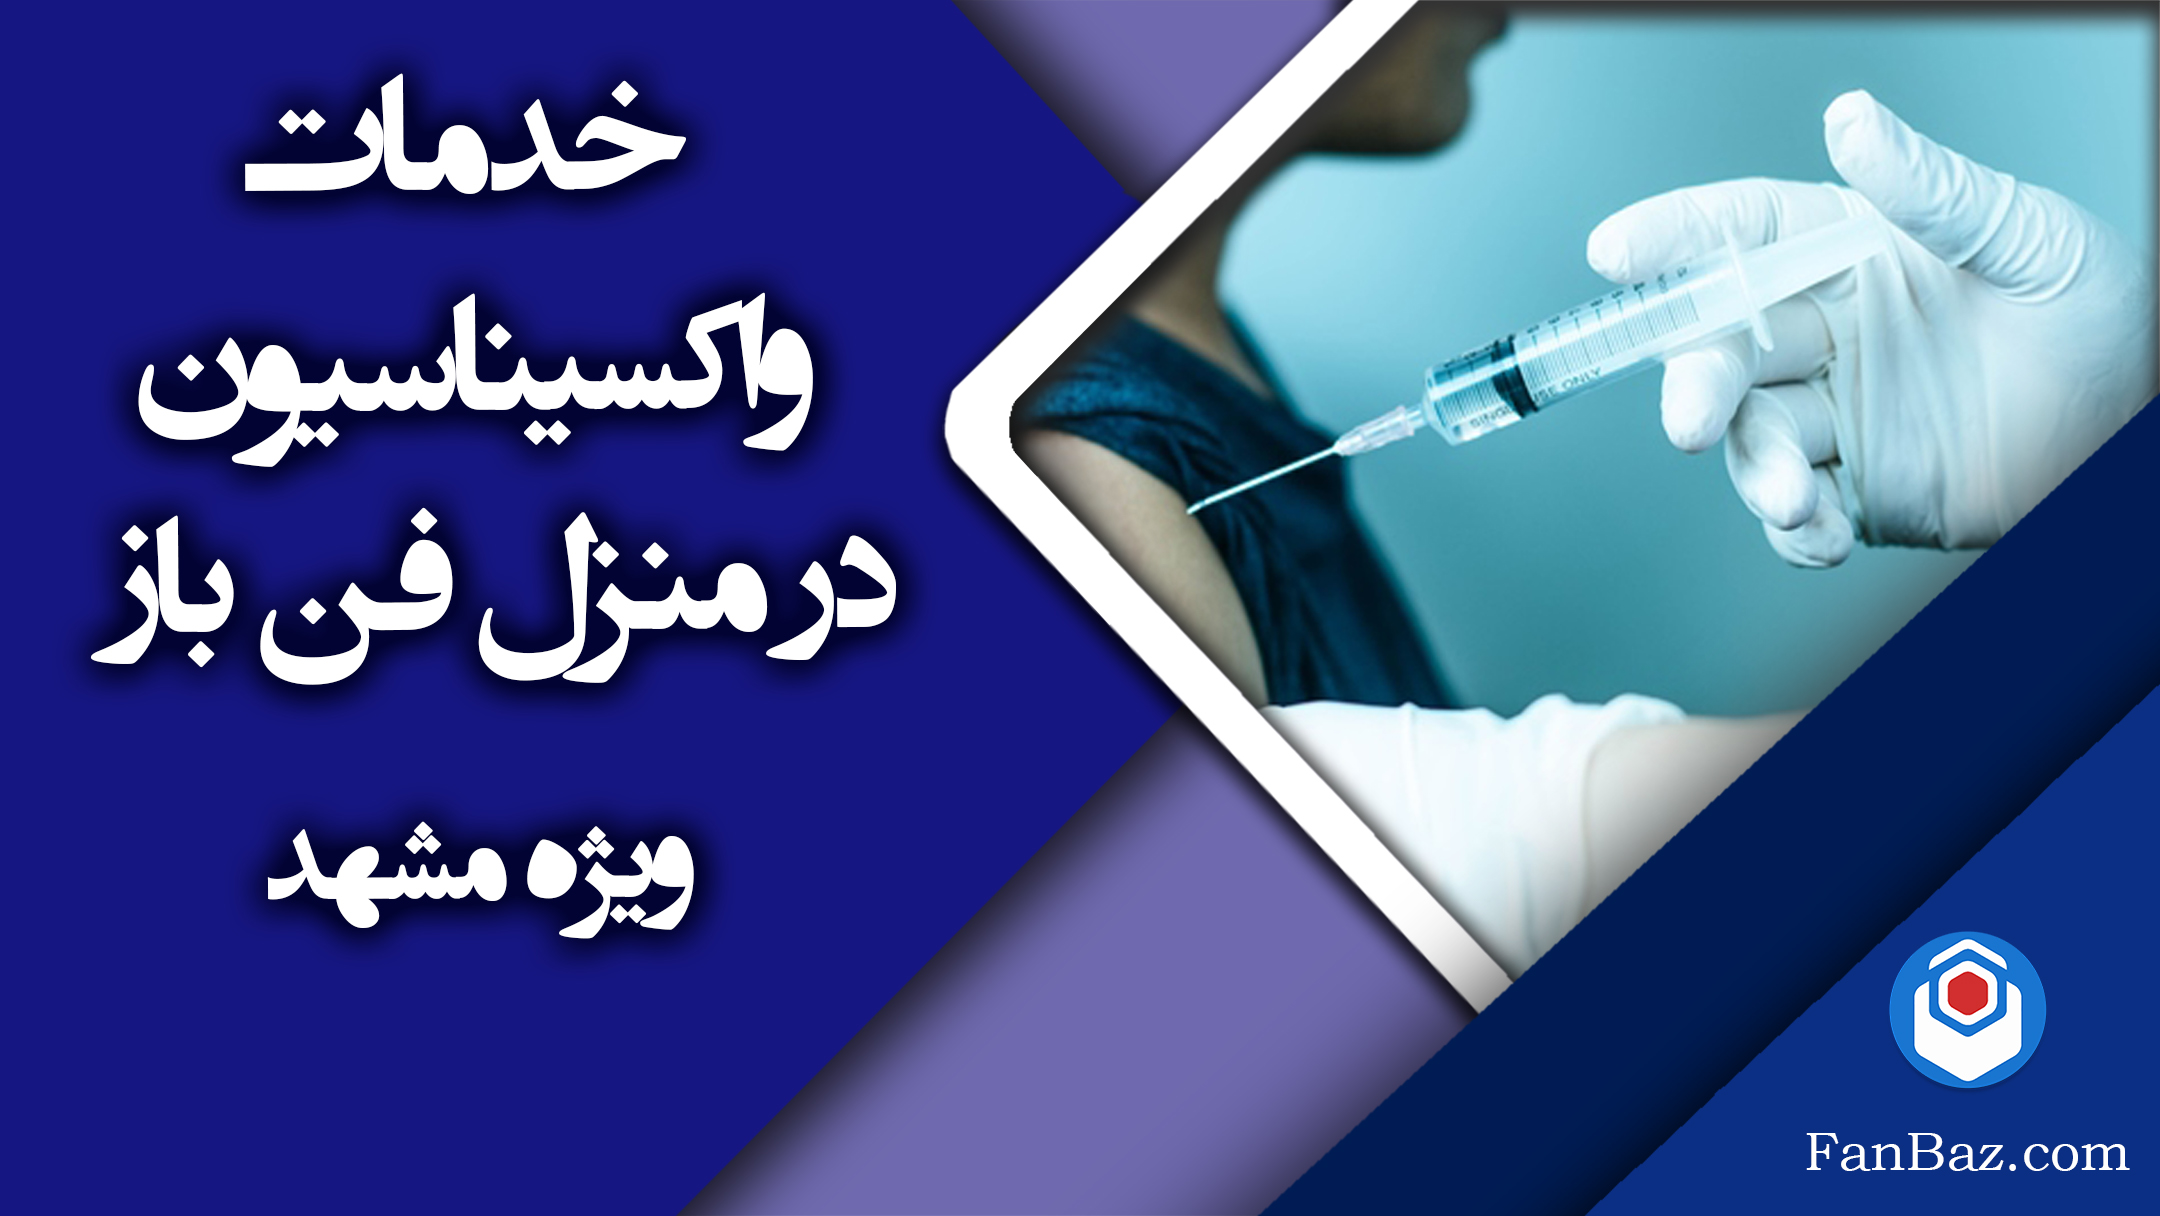 خدمات واکسیناسون فن باز در منزل در مشهد